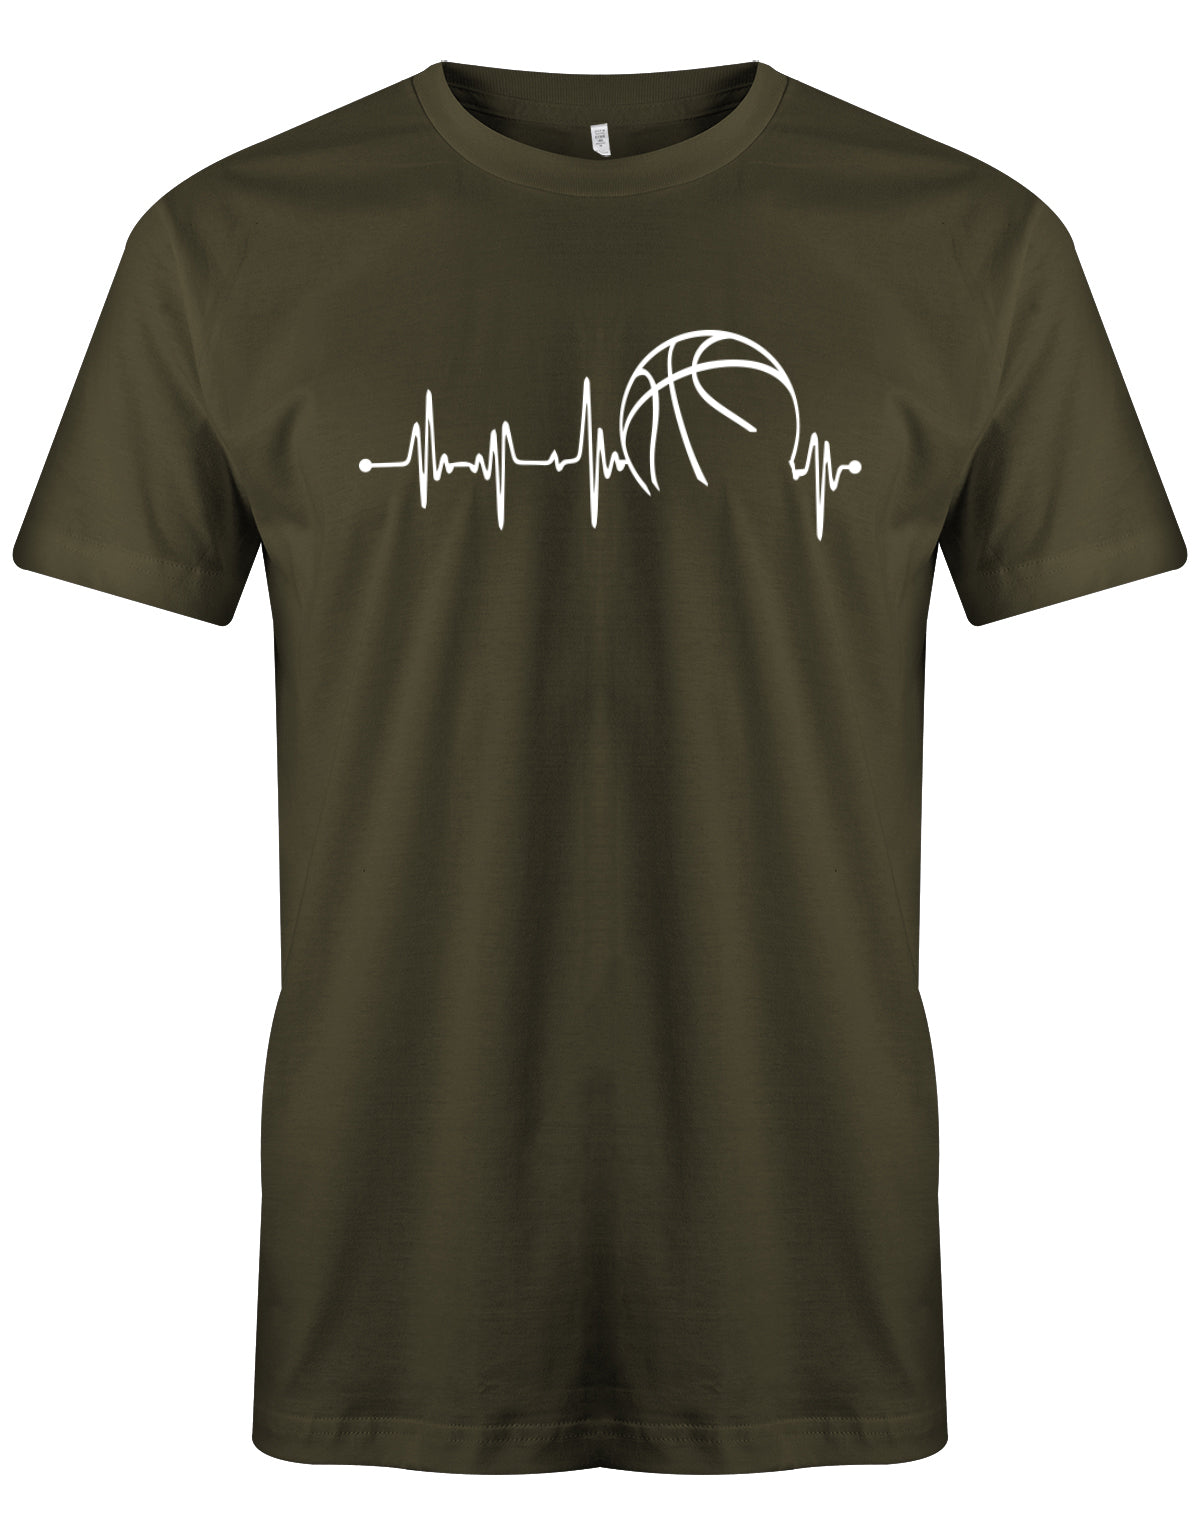 Basketball Motiv Shirt. Herzschlag Basketball - Herzfrequenz schlägt für Basketball. Army